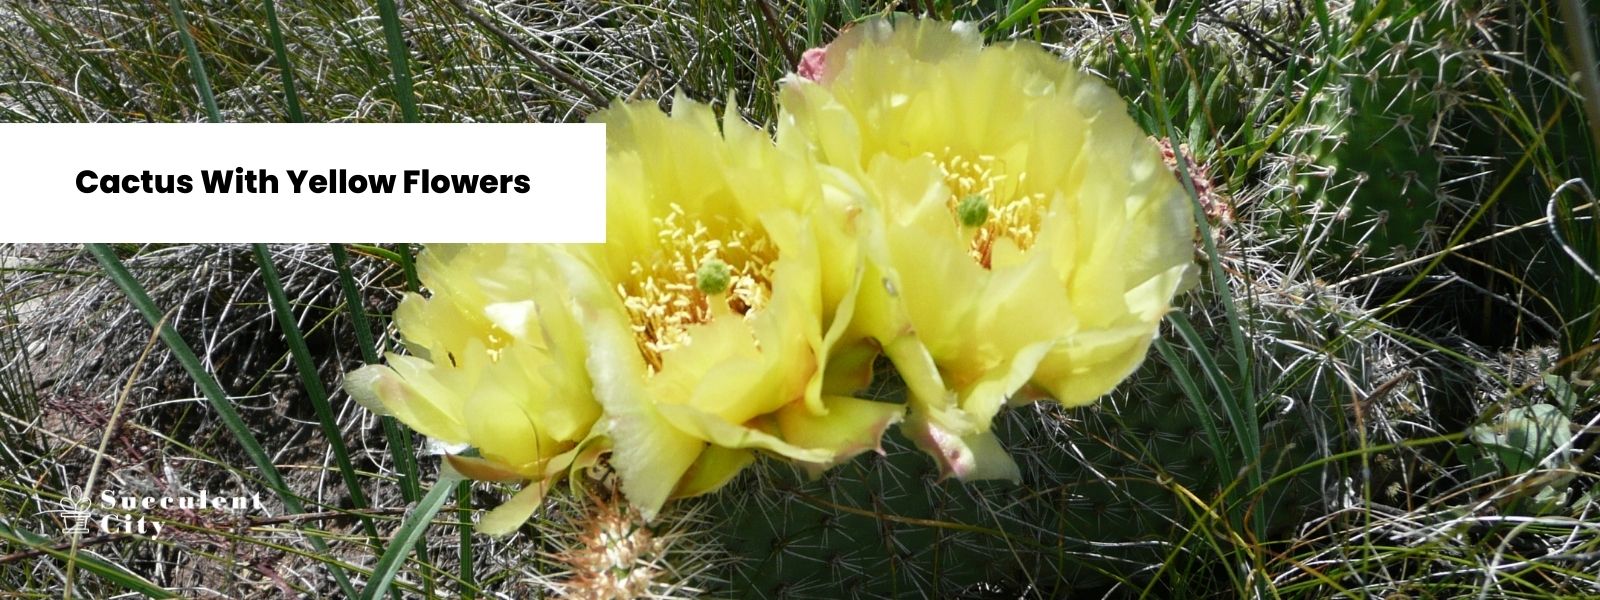 Una impresionante exhibición de cactus con flores amarillas.